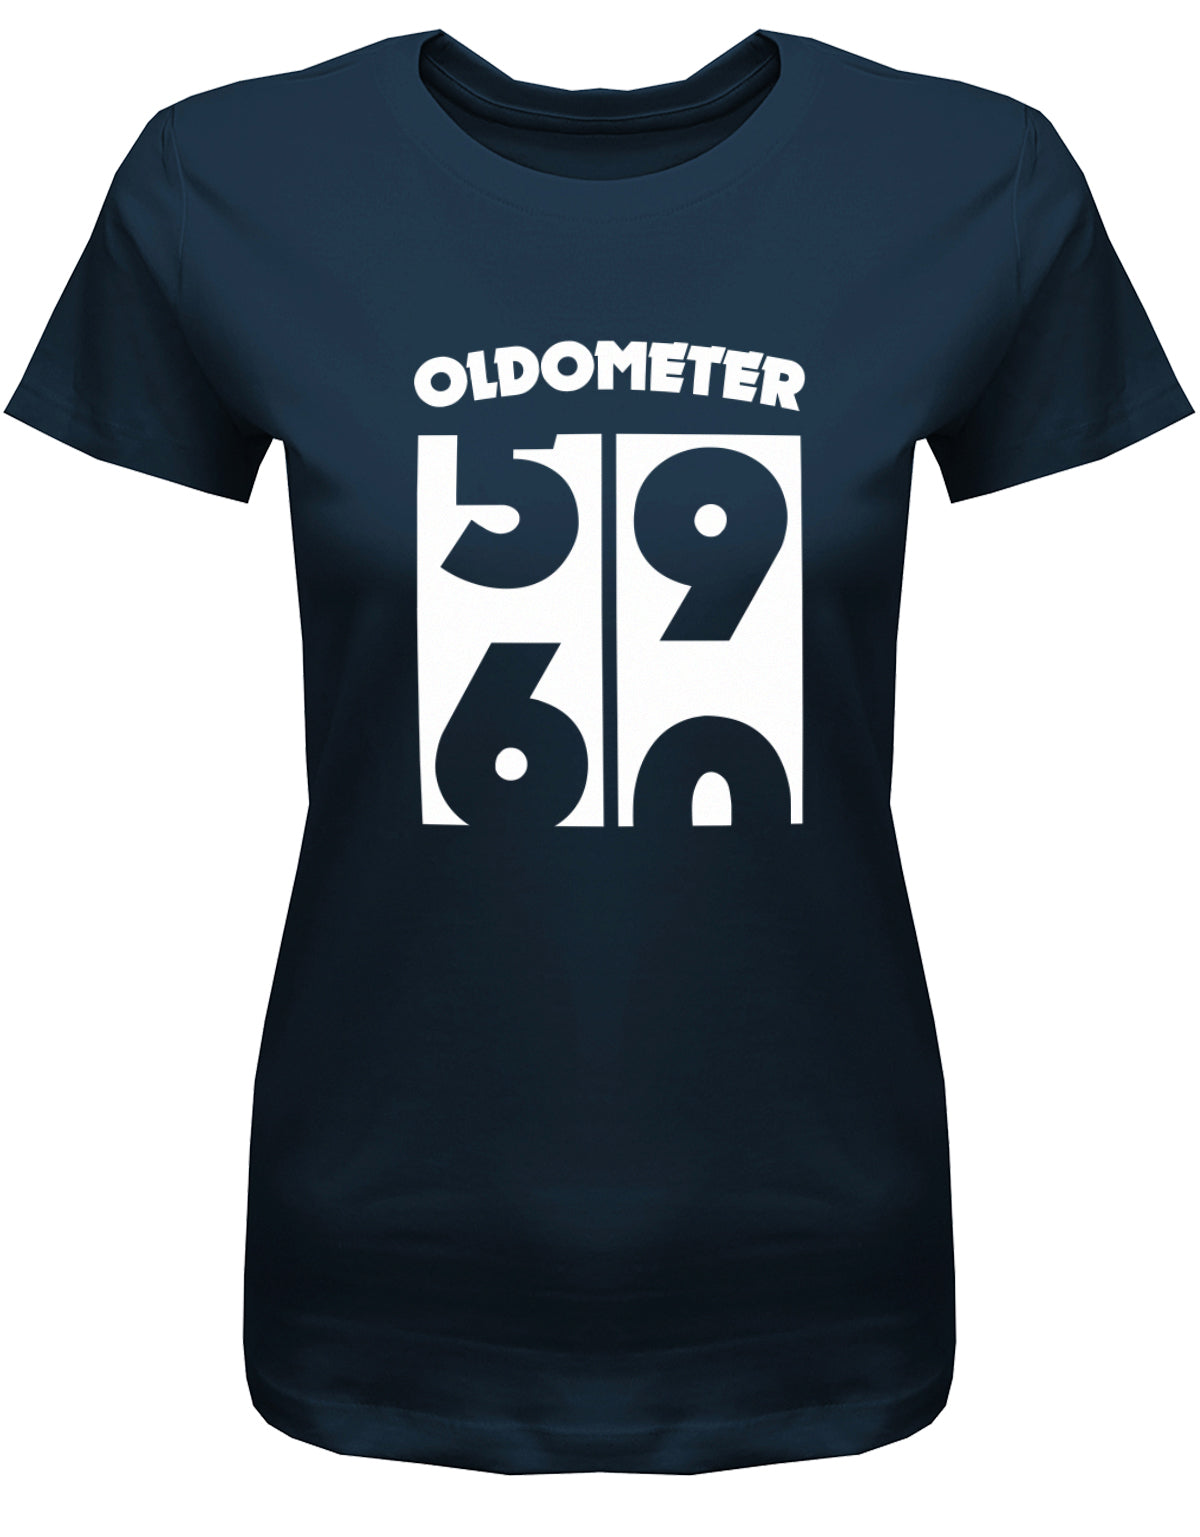 Lustiges T-Shirt zum 60 Geburtstag für die Frau Bedruckt mit Oldometer Wechsel von 59 zu 60 Jahren. Navy